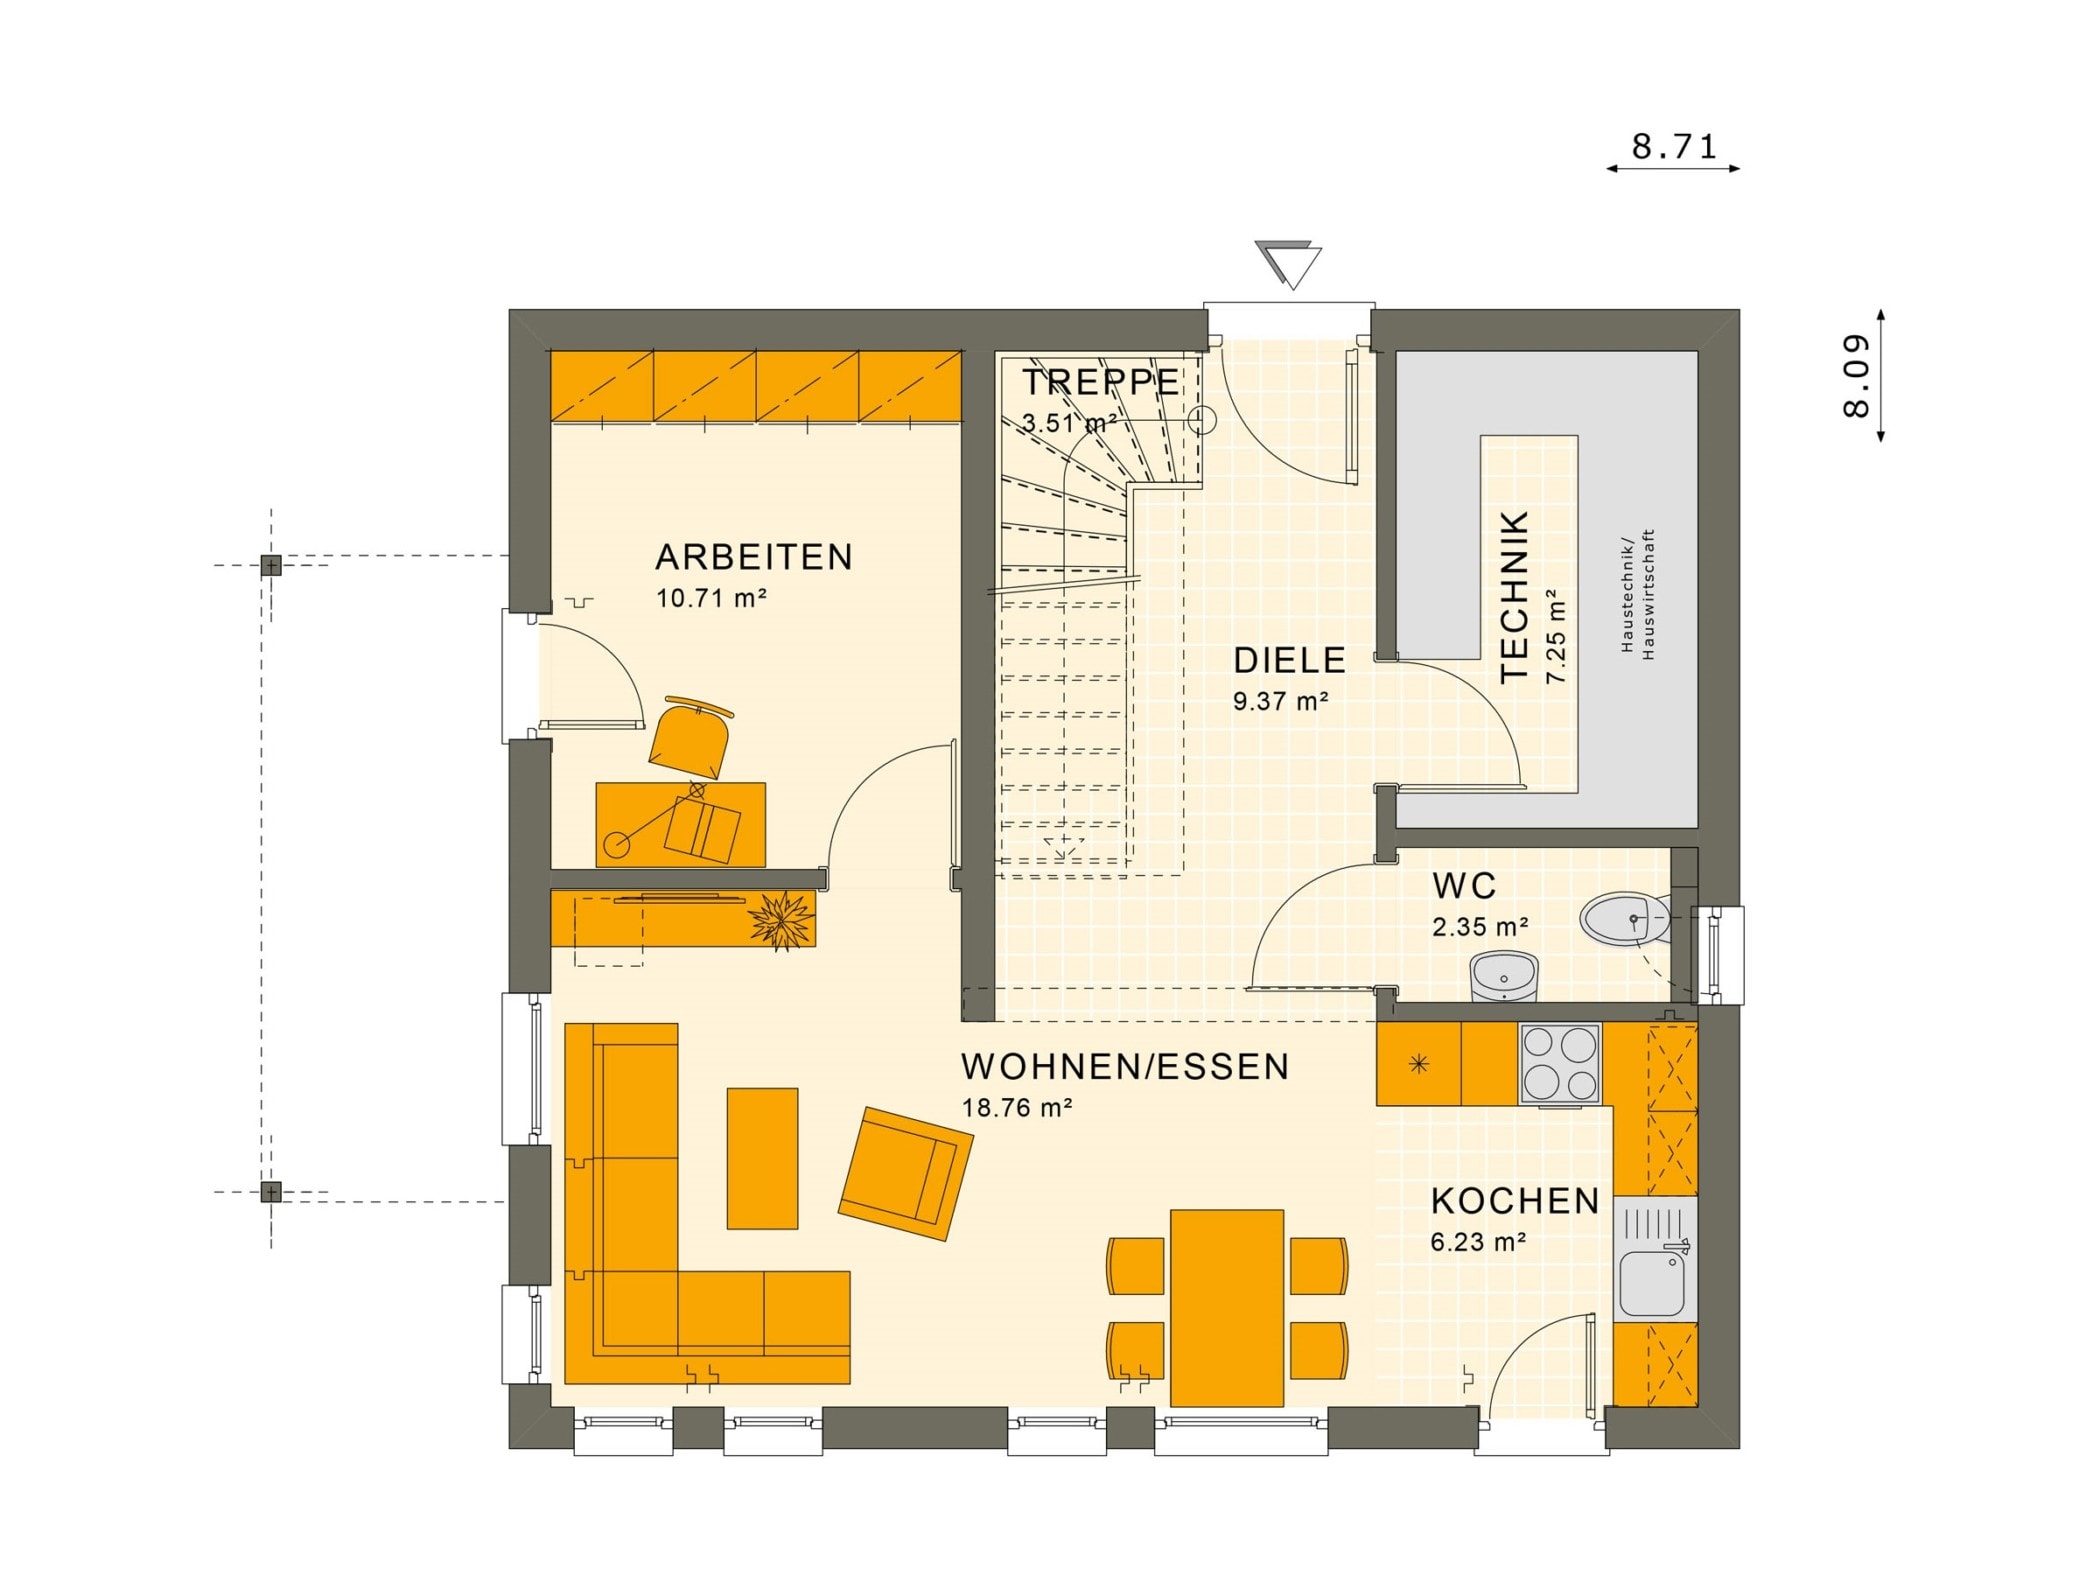 Grundriss Einfamilienhaus Erdgeschoss offen, 114 qm, 5 Zimmer - Haus bauen Ideen Fertighaus SUNSHINE 113 V4 von Living Haus - HausbauDirekt.de